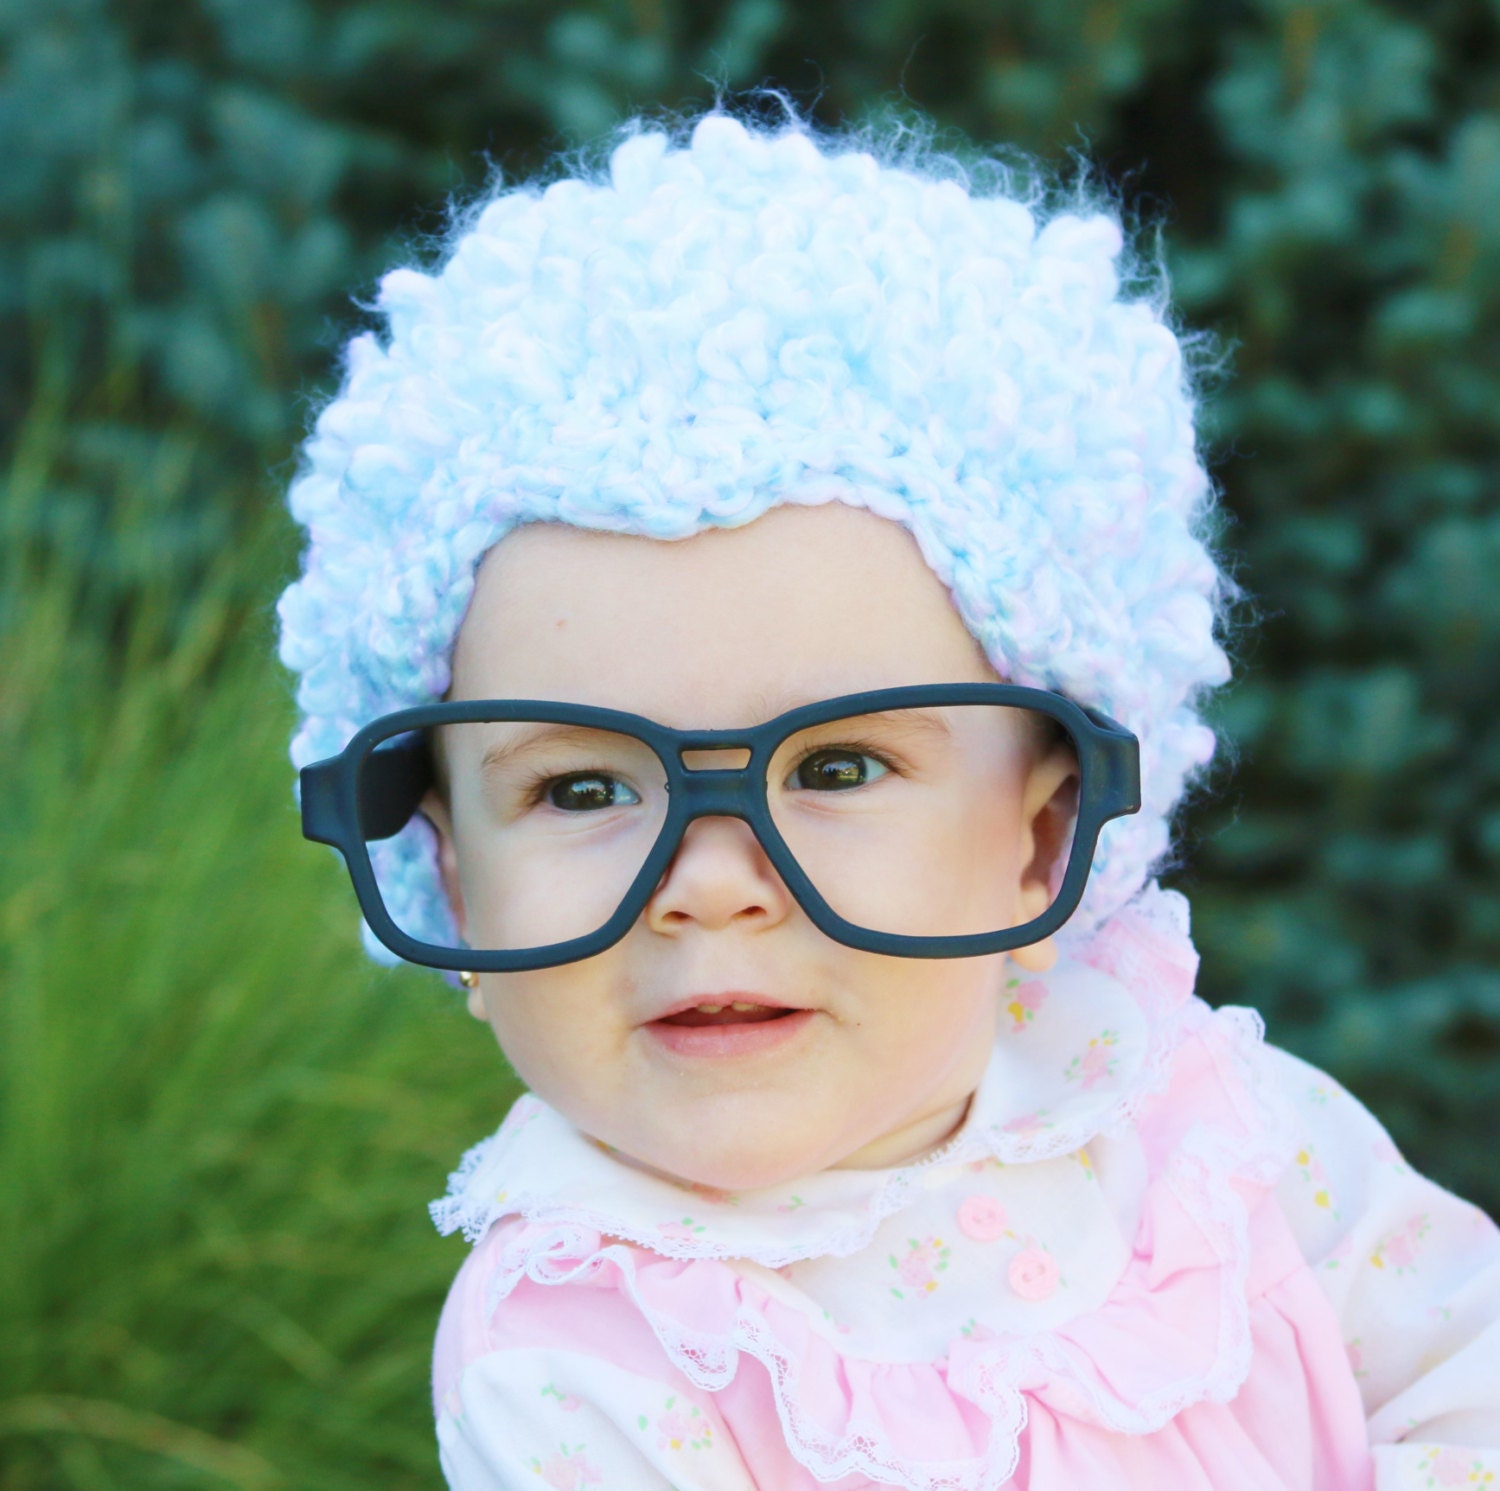 grand-mère deguisement bebe fille newborn photography props vieille dame  Cardigan Pause perruque verre set tenue